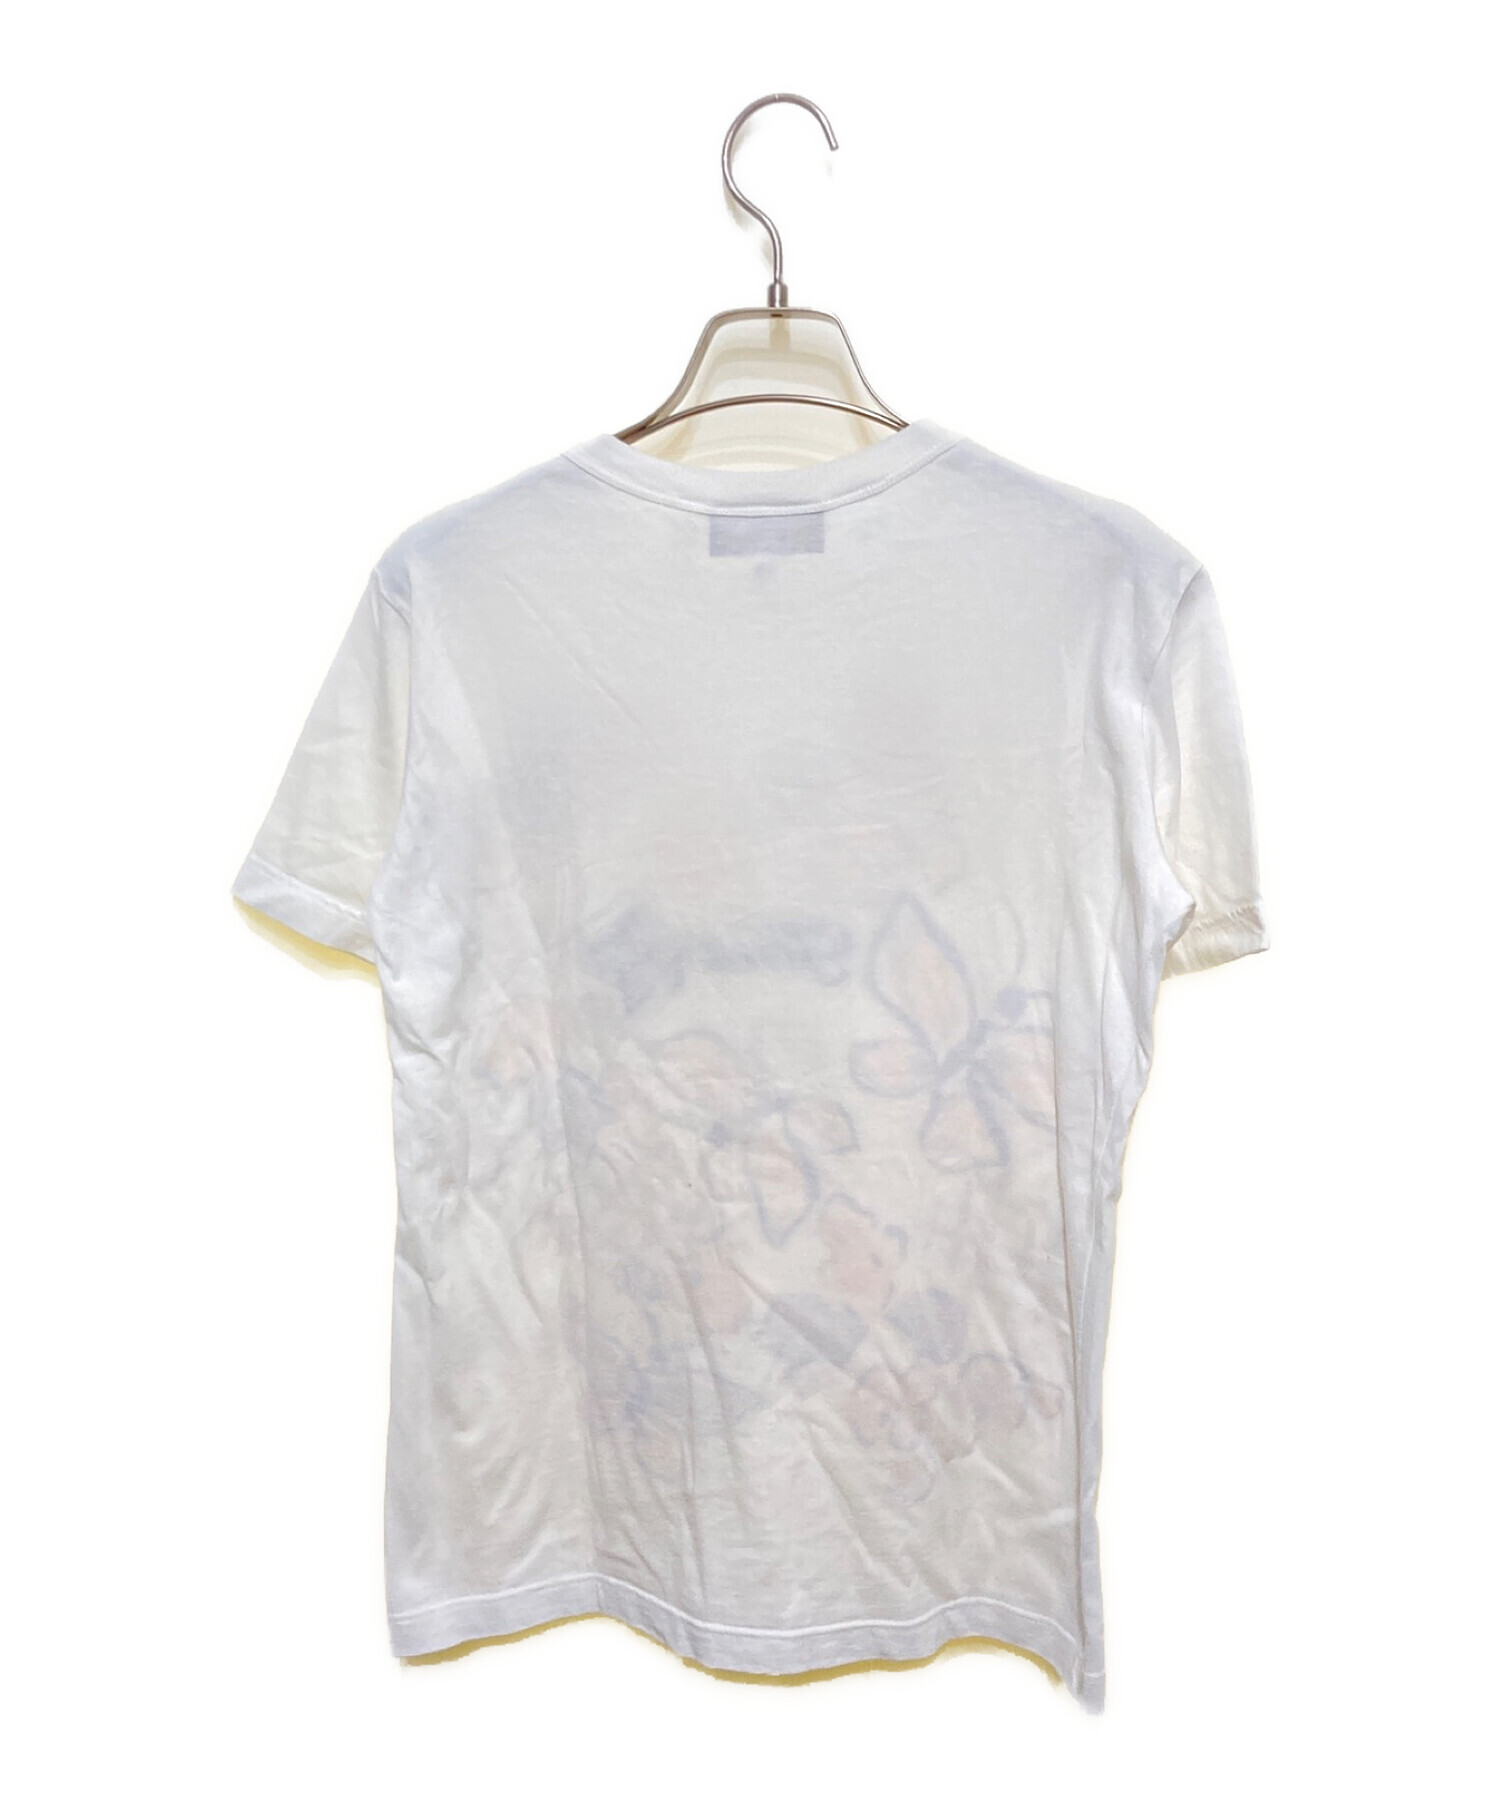 FENDI (フェンディ) フラワープリントTシャツ ホワイト サイズ:L